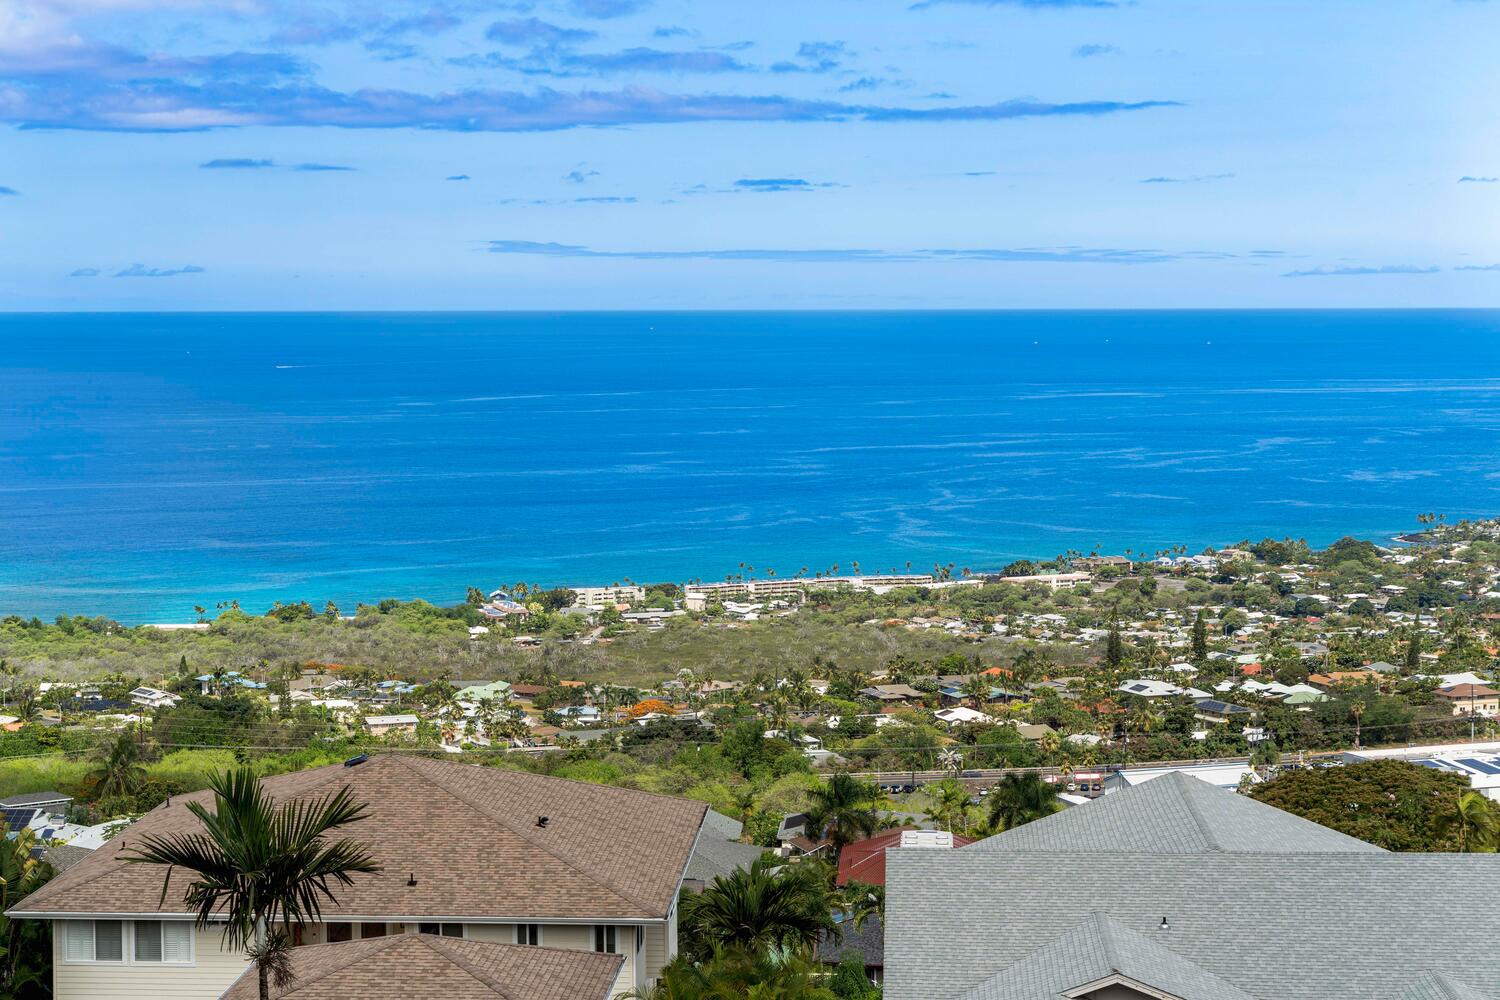 Kailua Kona Vacation Rentals, Honu O Kai (Turtle of the Sea) - Enjoy the ocean views from the lanai.